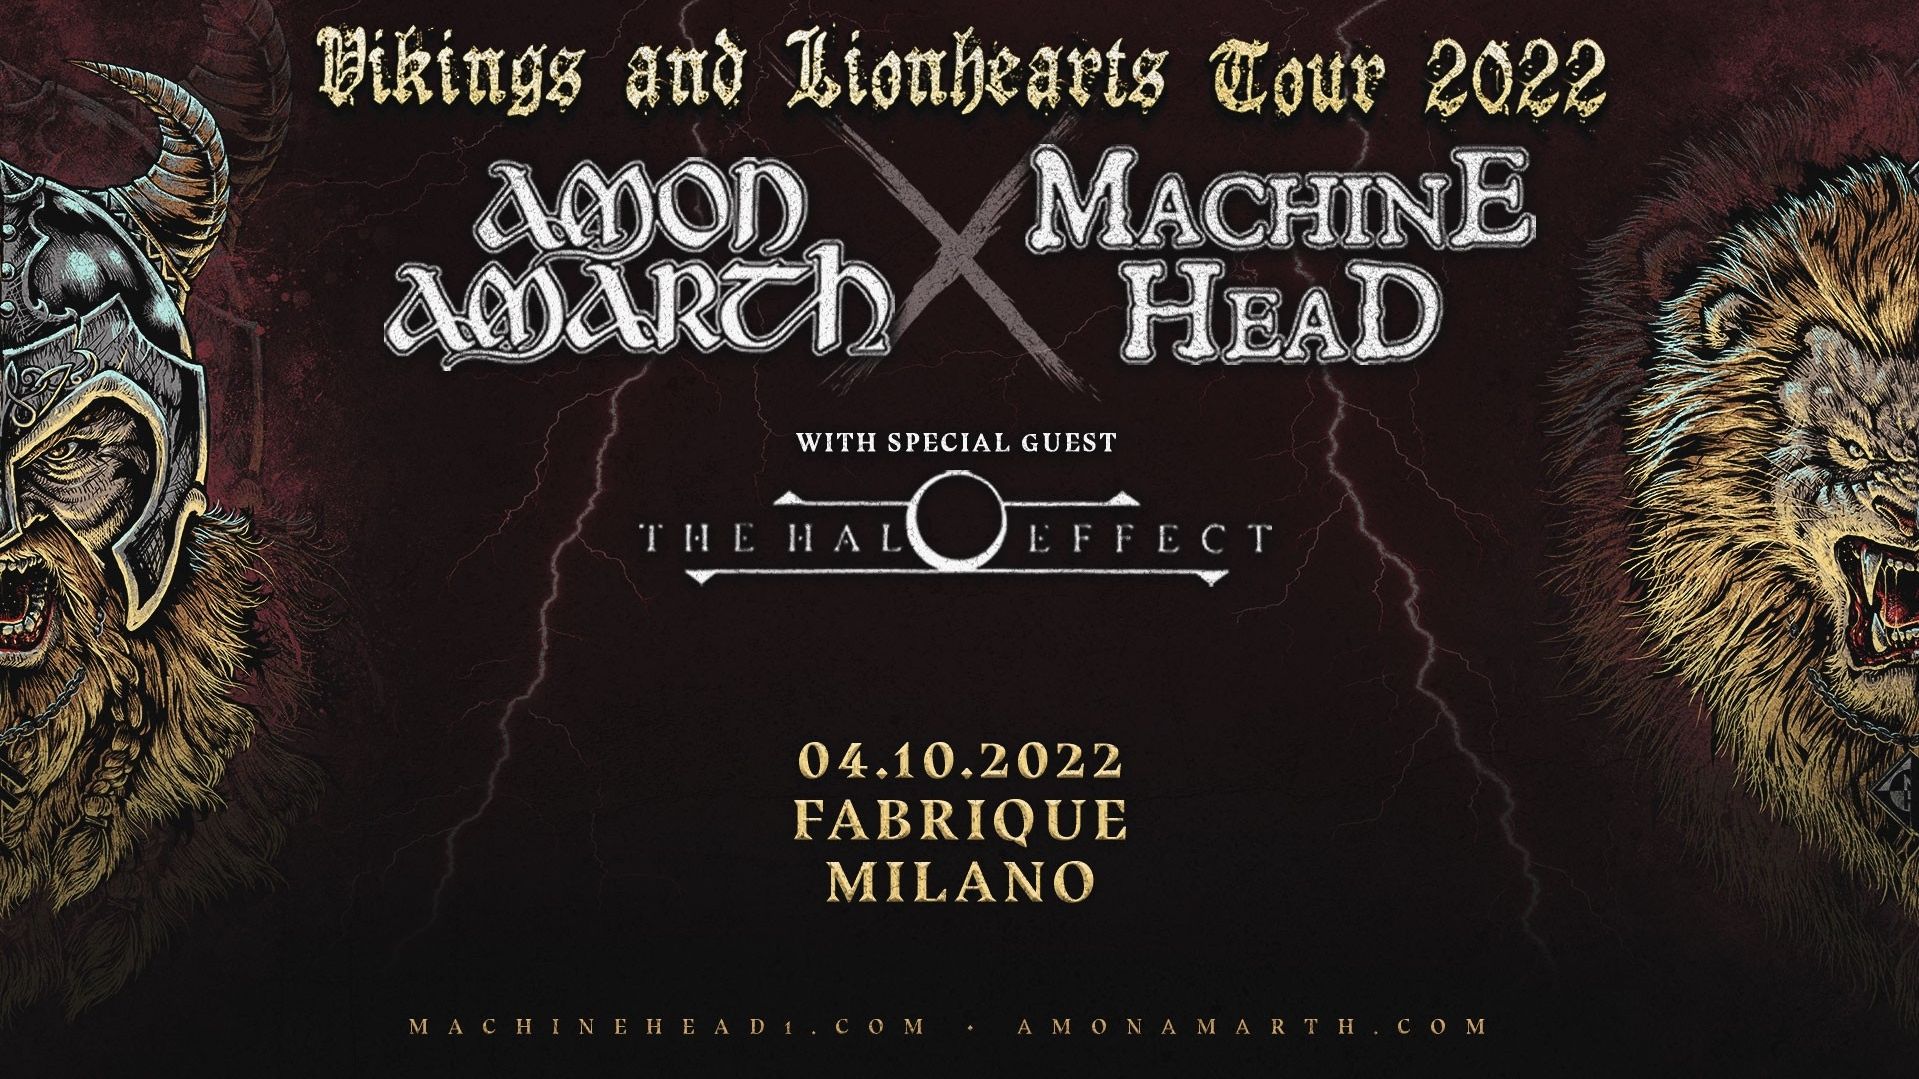 Amon Amarth + Machine Head